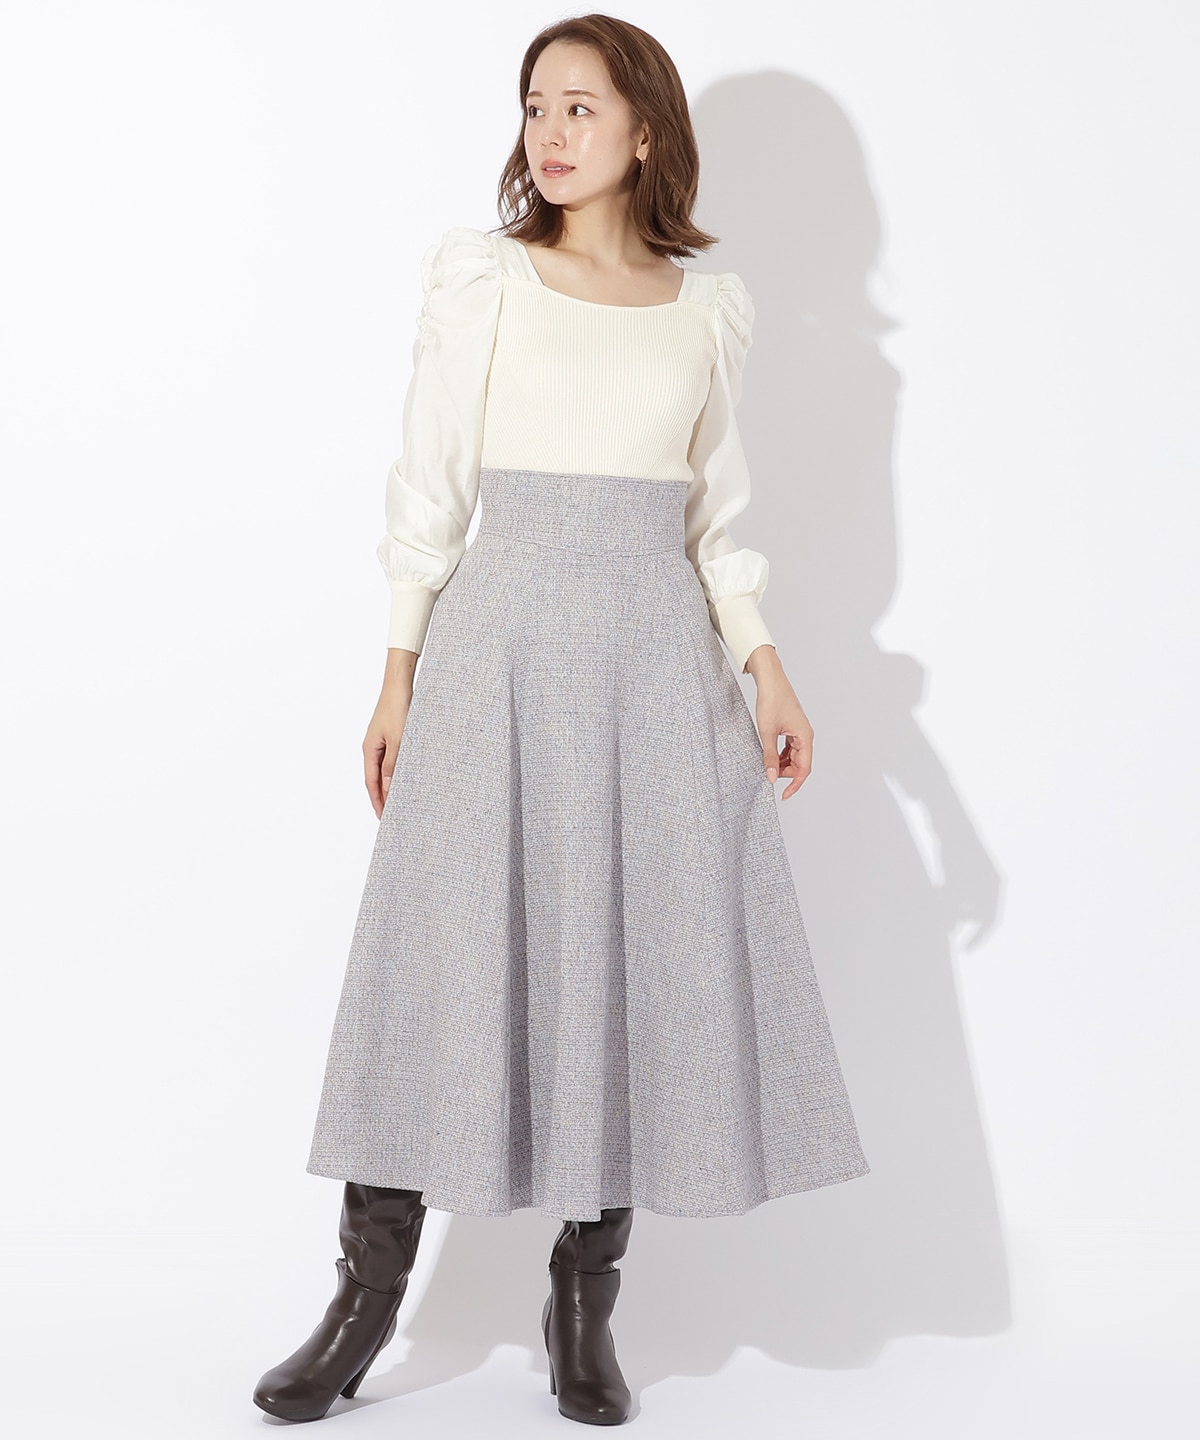 MIXカラーツィードスカート|And Couture(アンドクチュール)の通販